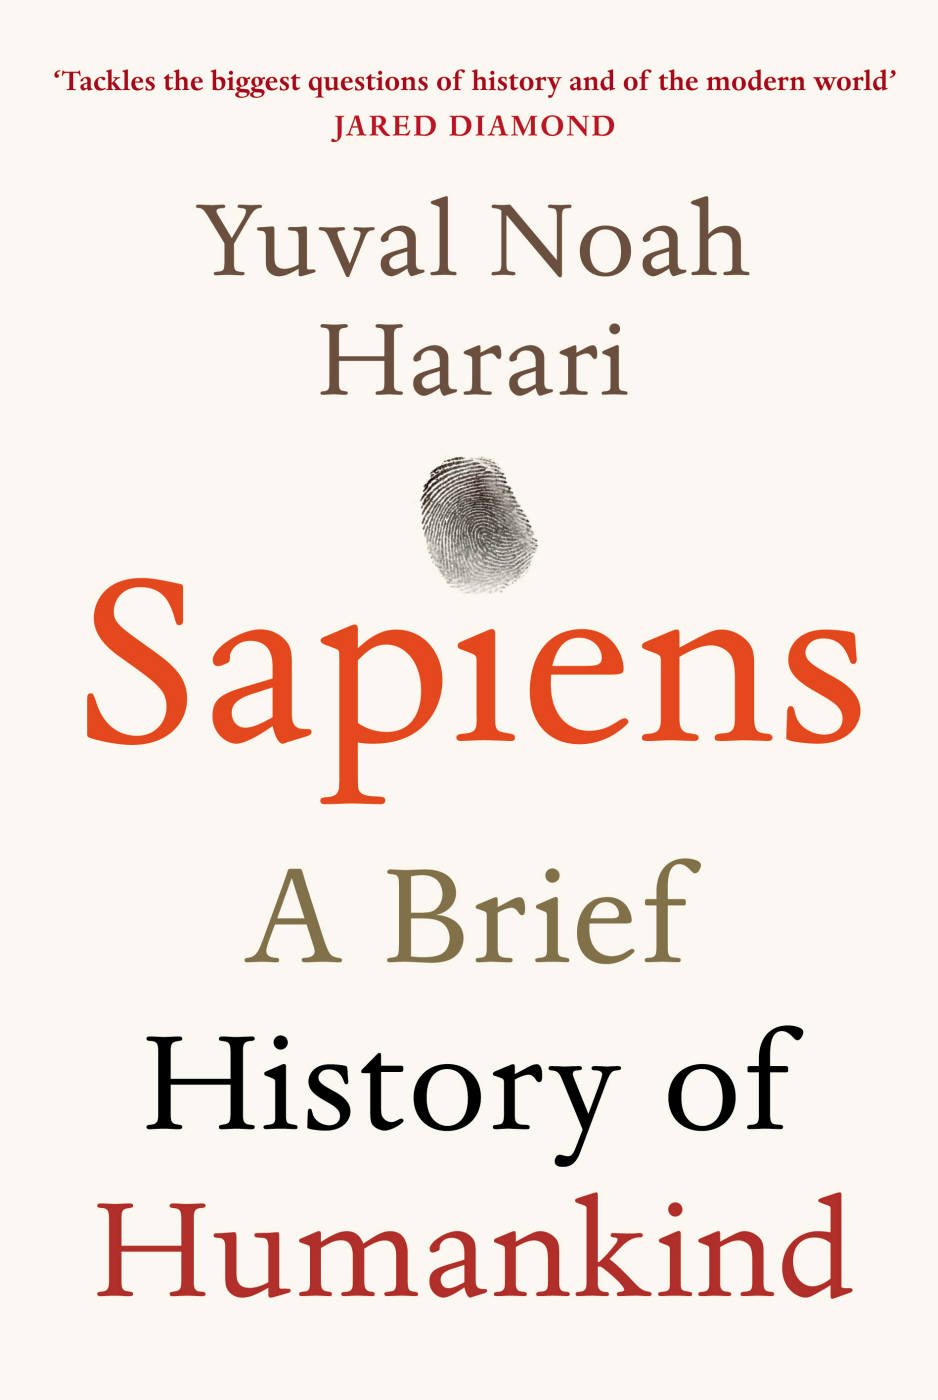 Yuval Noah Harari: Sapiens (2014, Penguin Random House)